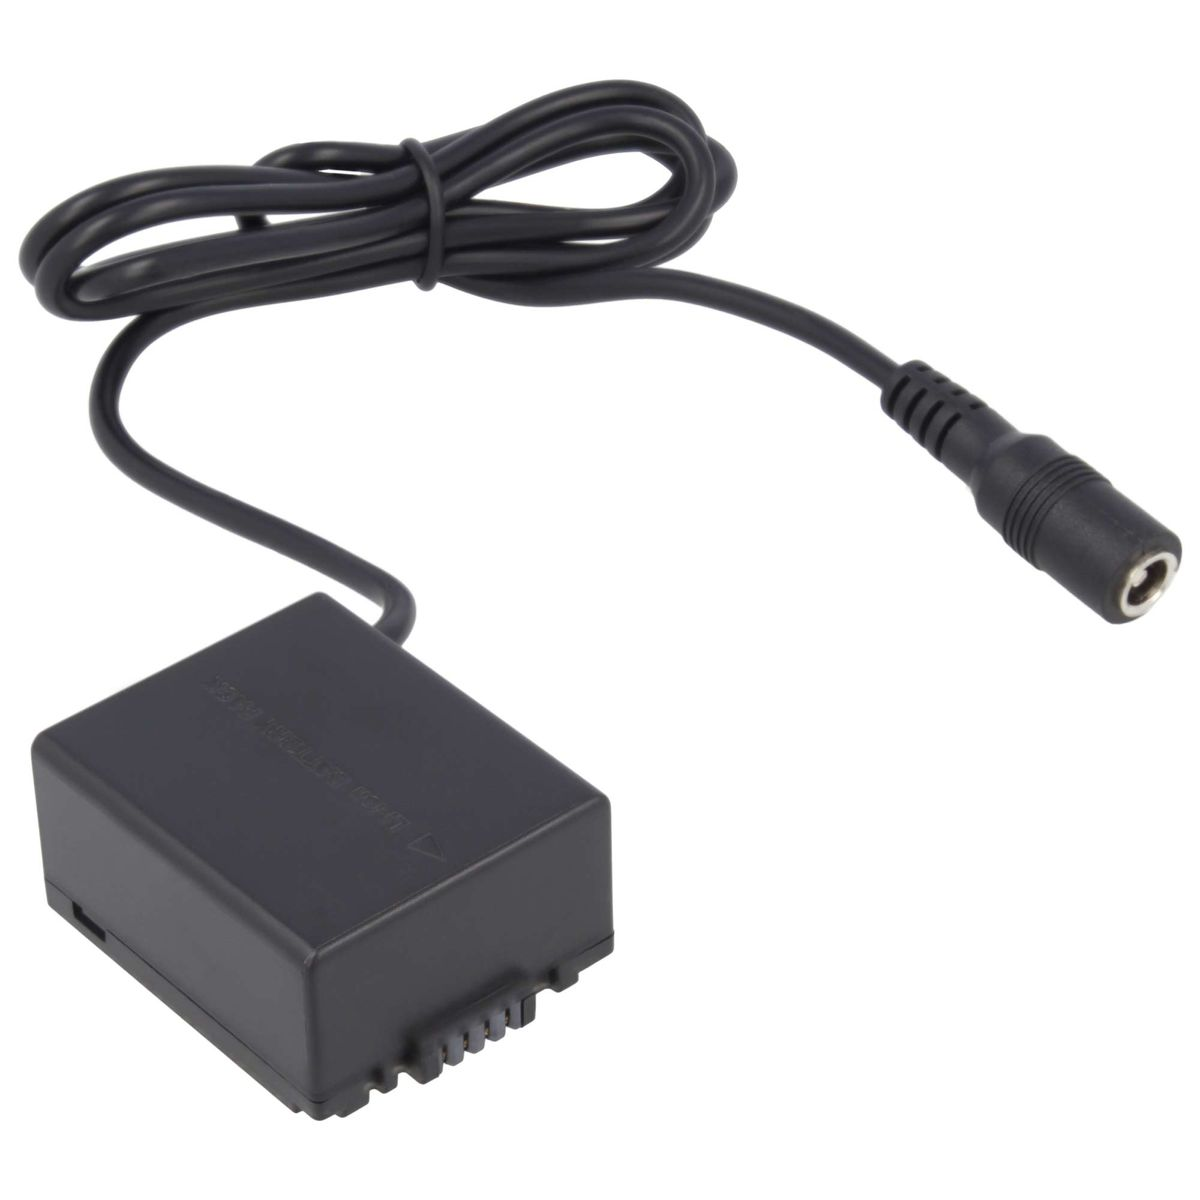 Adapter mit AKKU-KING Panasonic Panasonic, DCC3 + USB-C Kuppler keine Angabe Ladegerät kompatibel